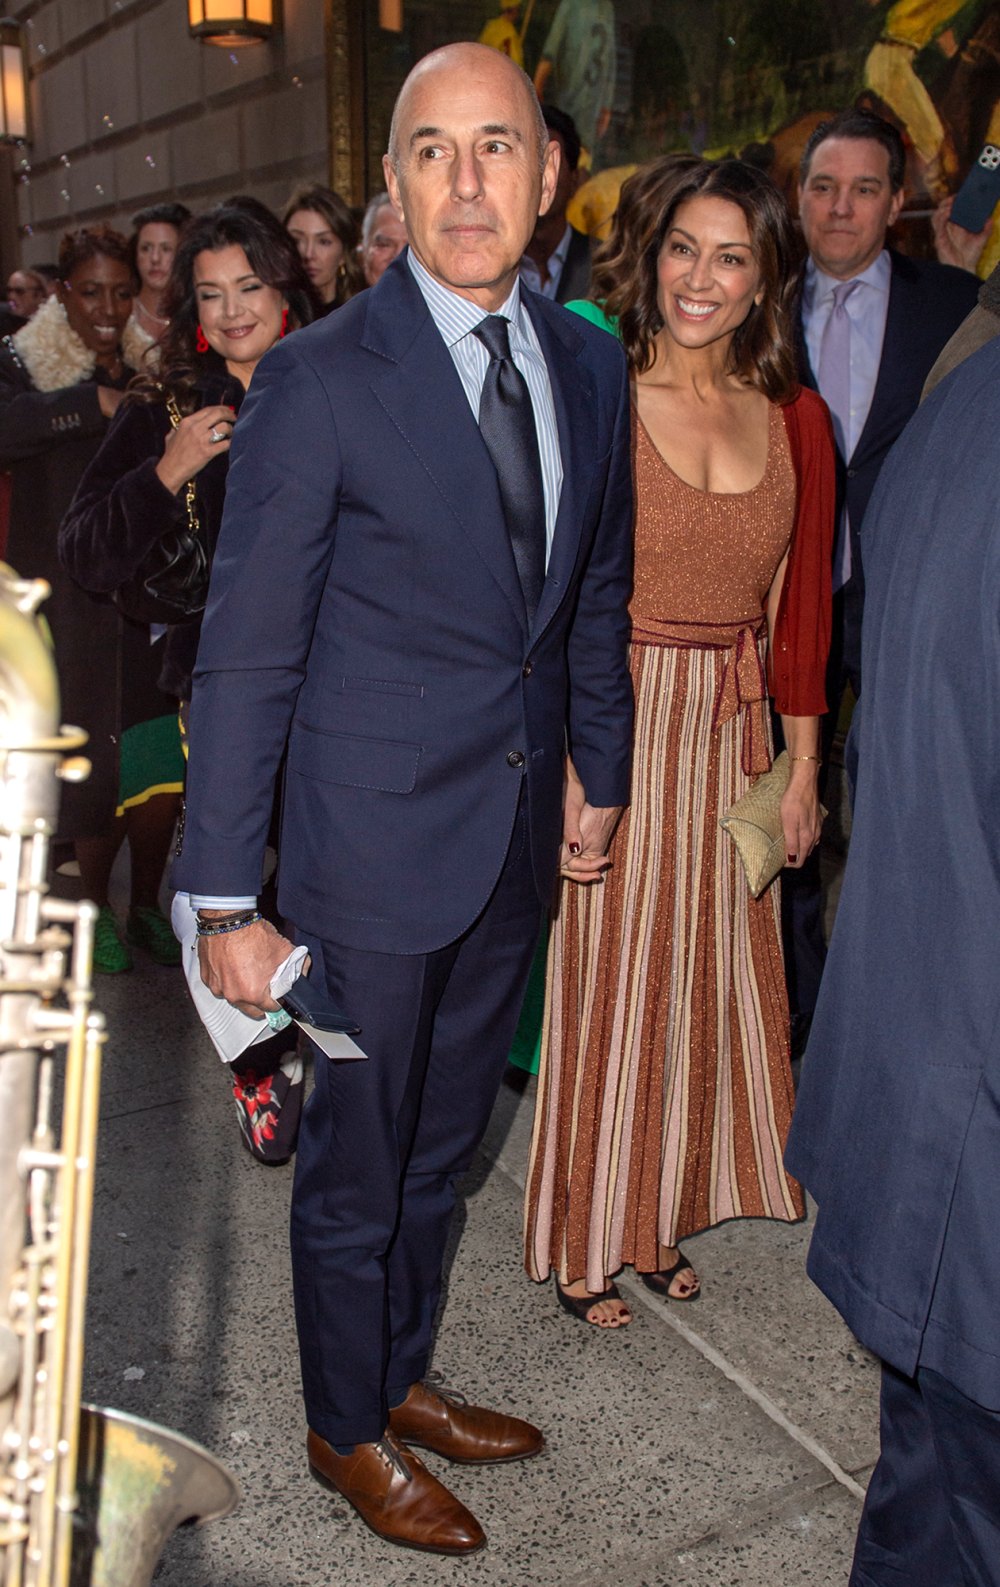 Matt Lauer and Girlfriend Hold Hands at Don Lemon's Wedding